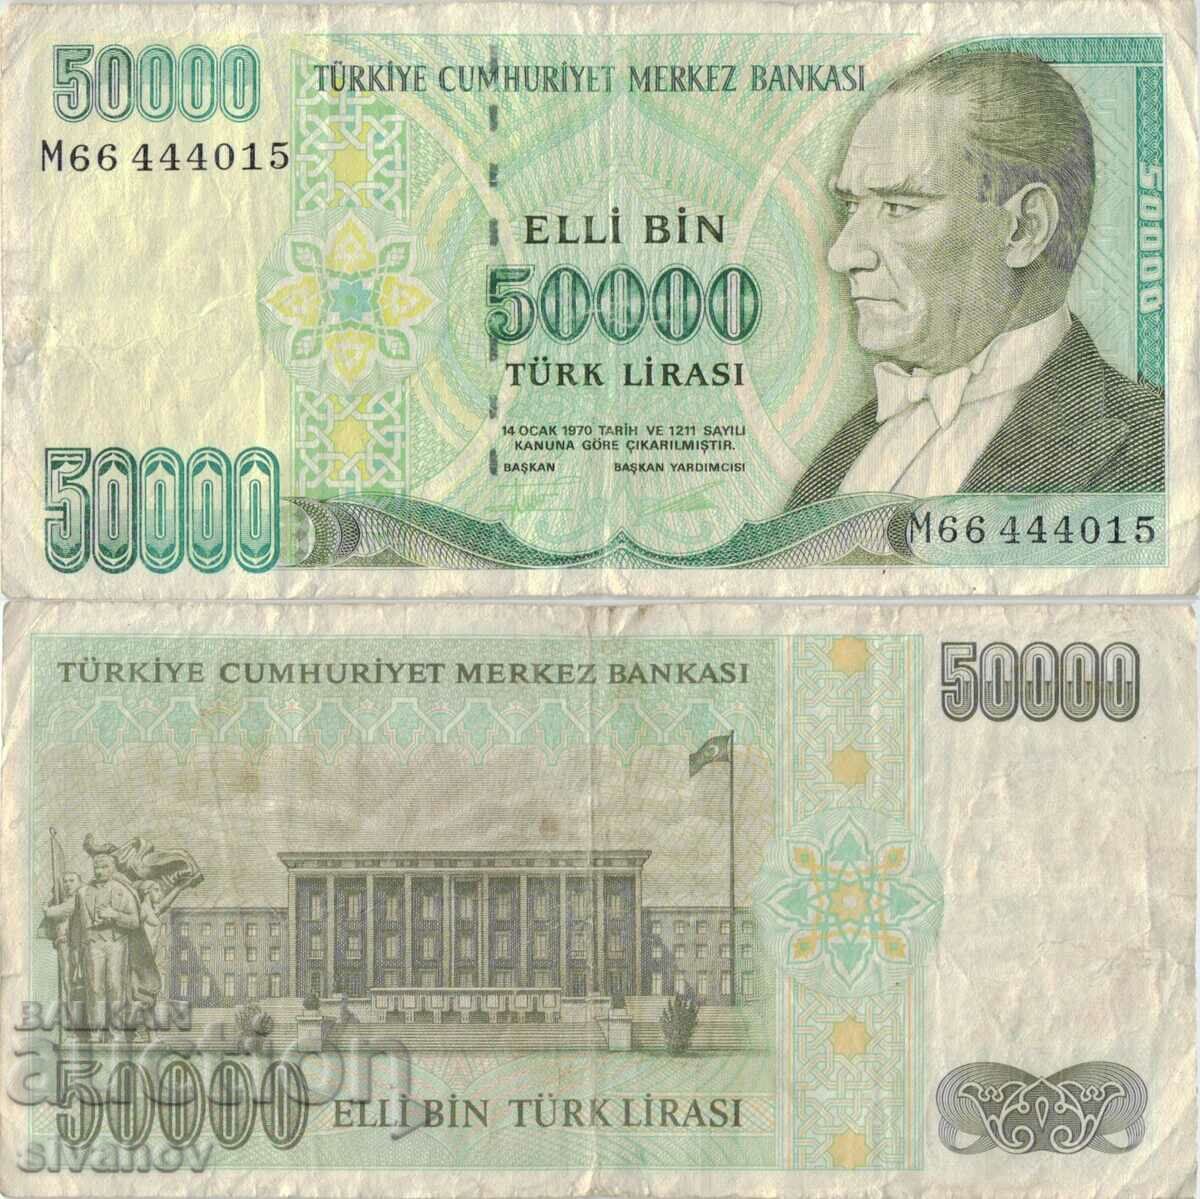 Turkey 50,000 lira 1970 (1995) year banknote #5189